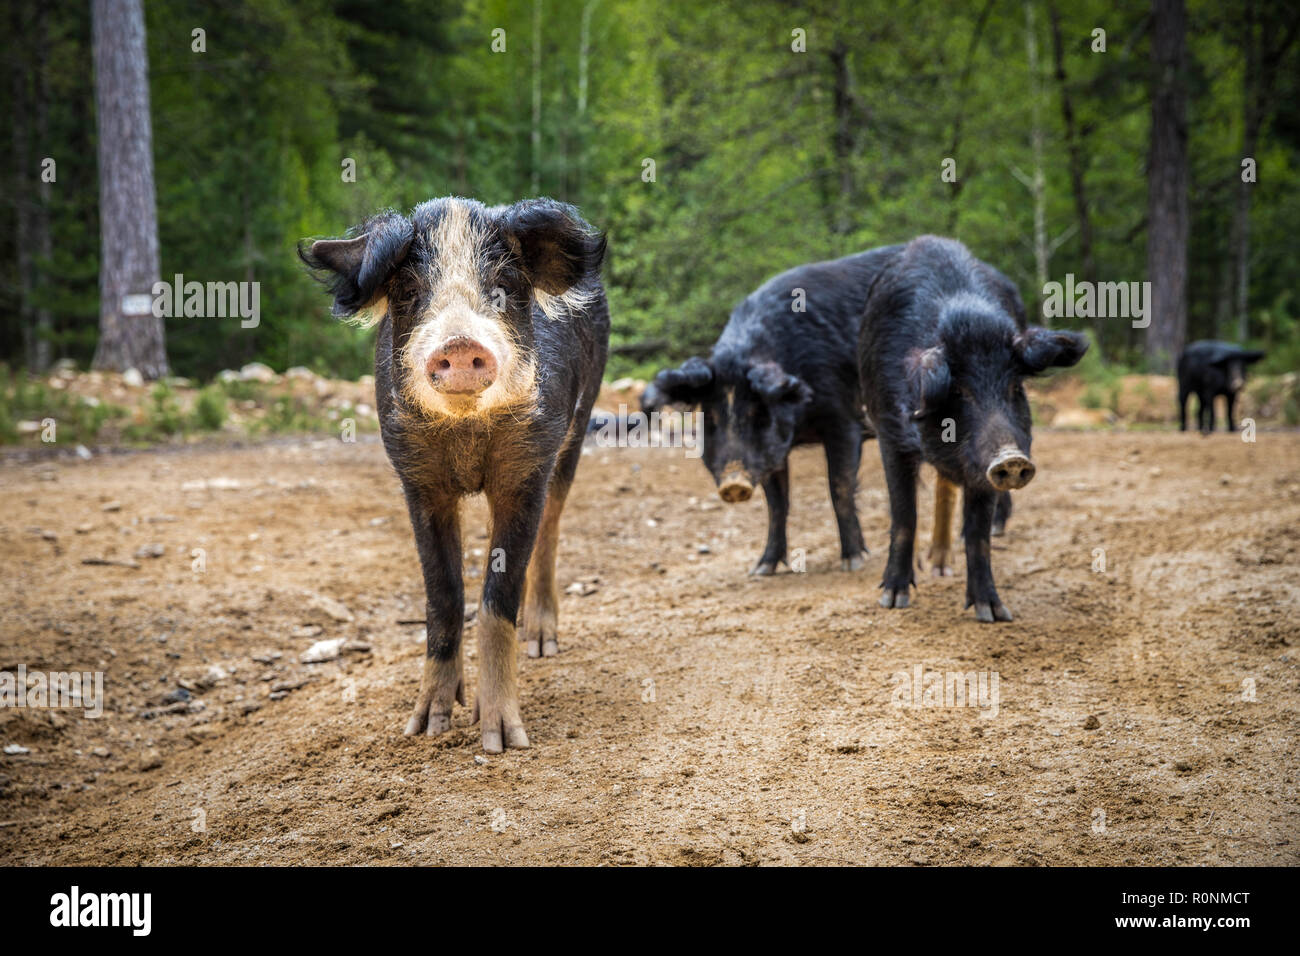 Suini selvatici in una foresta in corsica, cochon sauvage dans la forêt corse Foto Stock